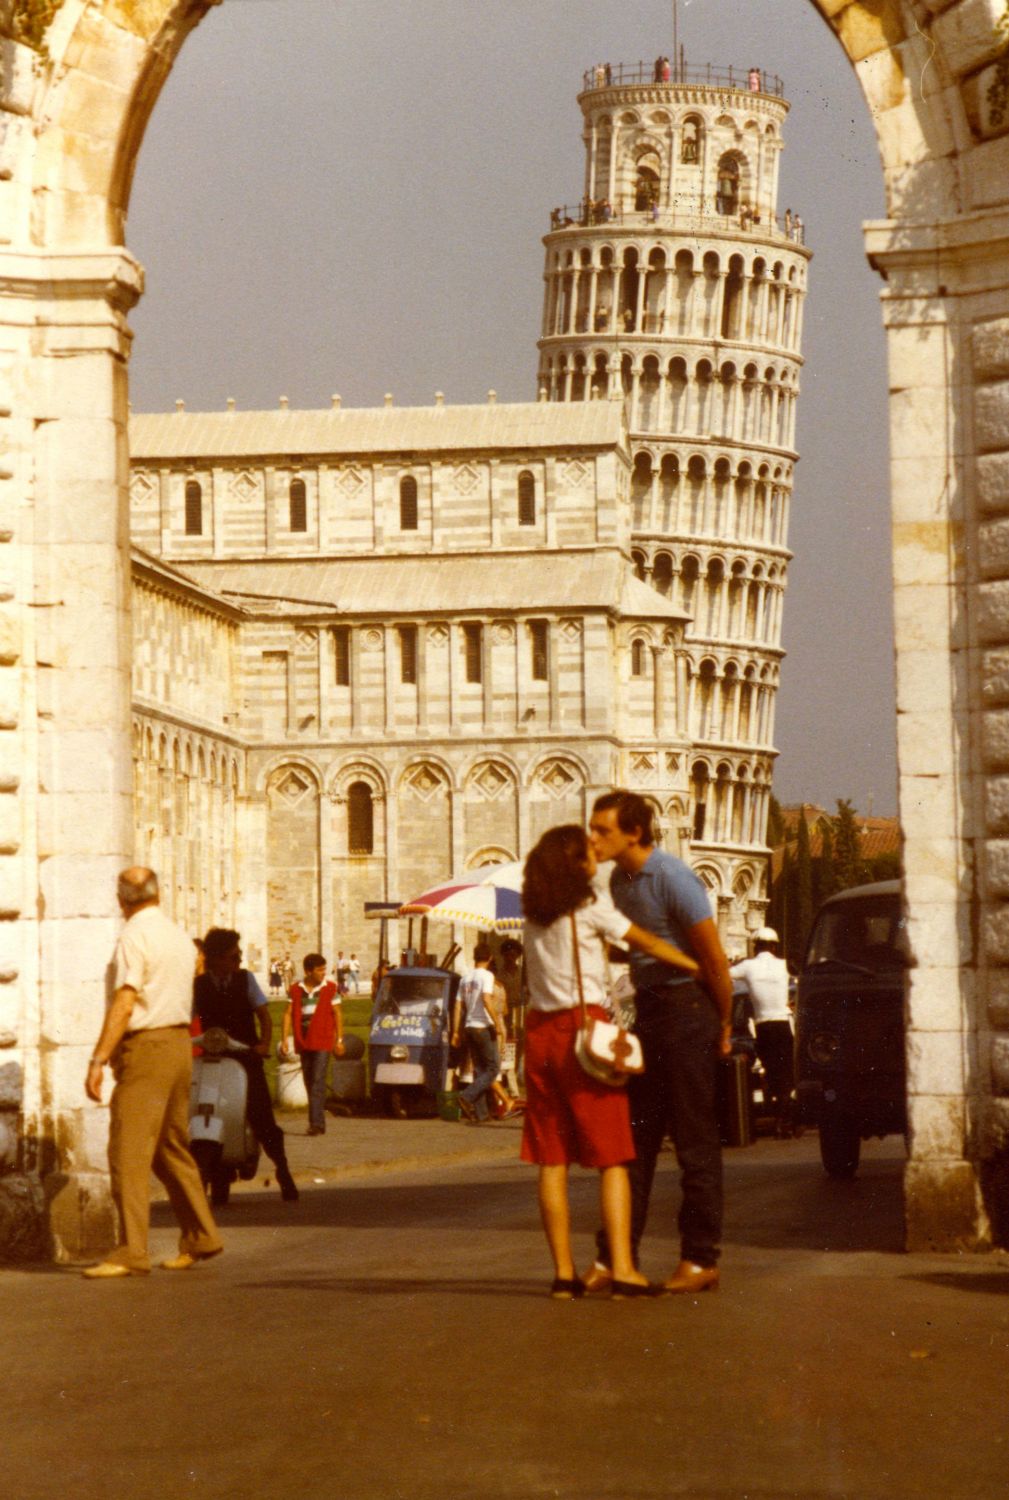 På tur til Pisa, her kysses der...